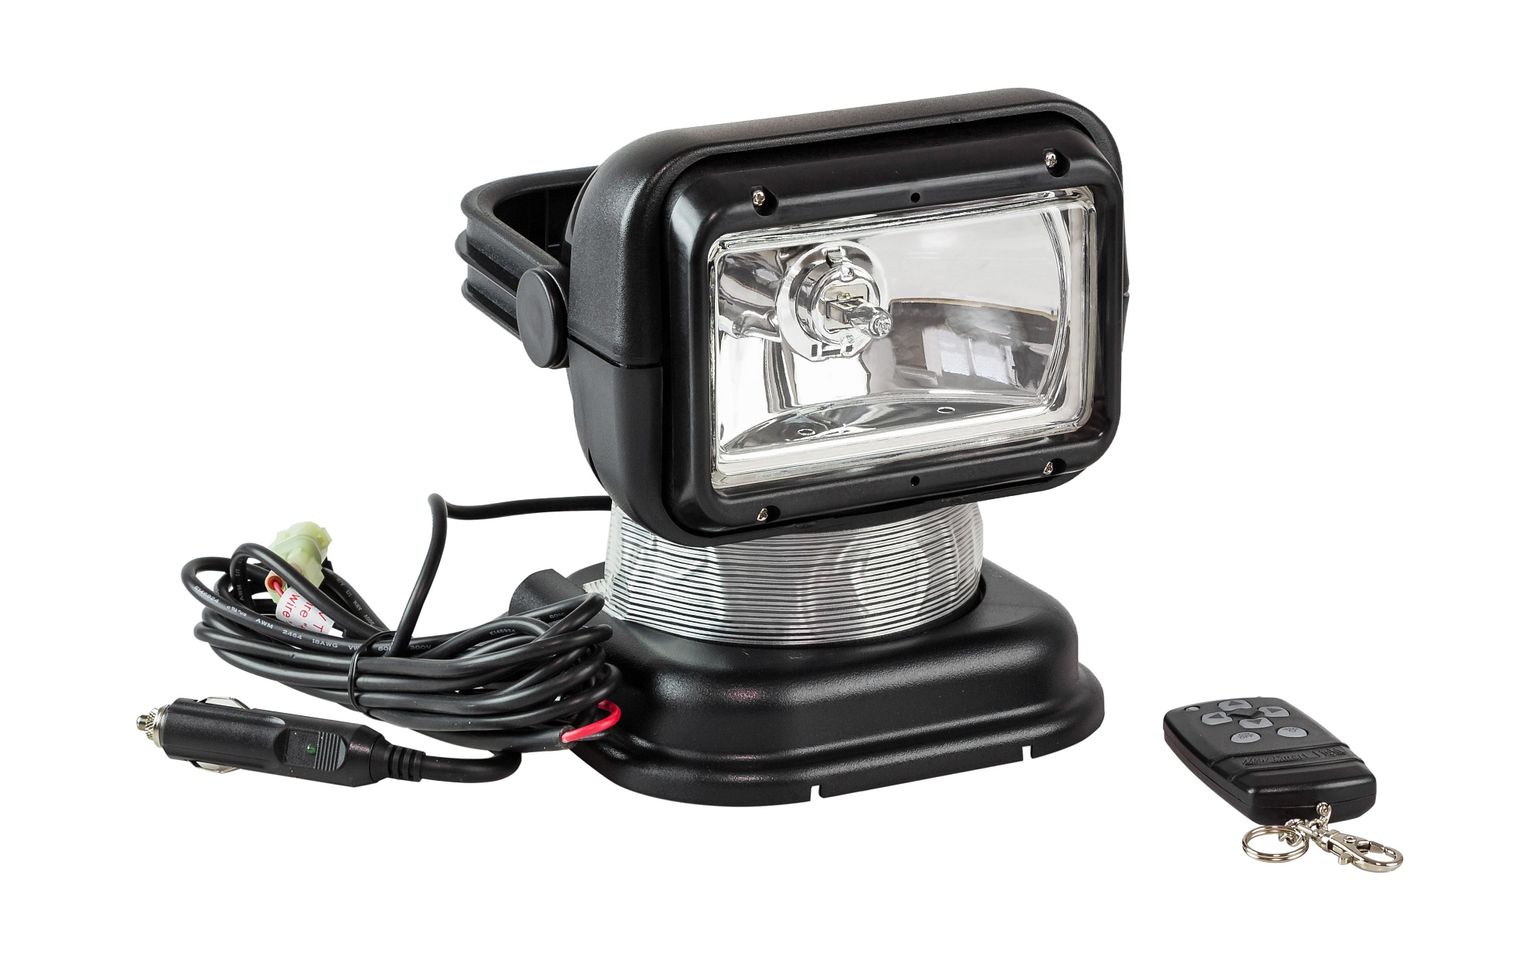 Прожектор с дистанционным управлением, черный корпус, галоген, брелок, модель 950 купить c доставкой